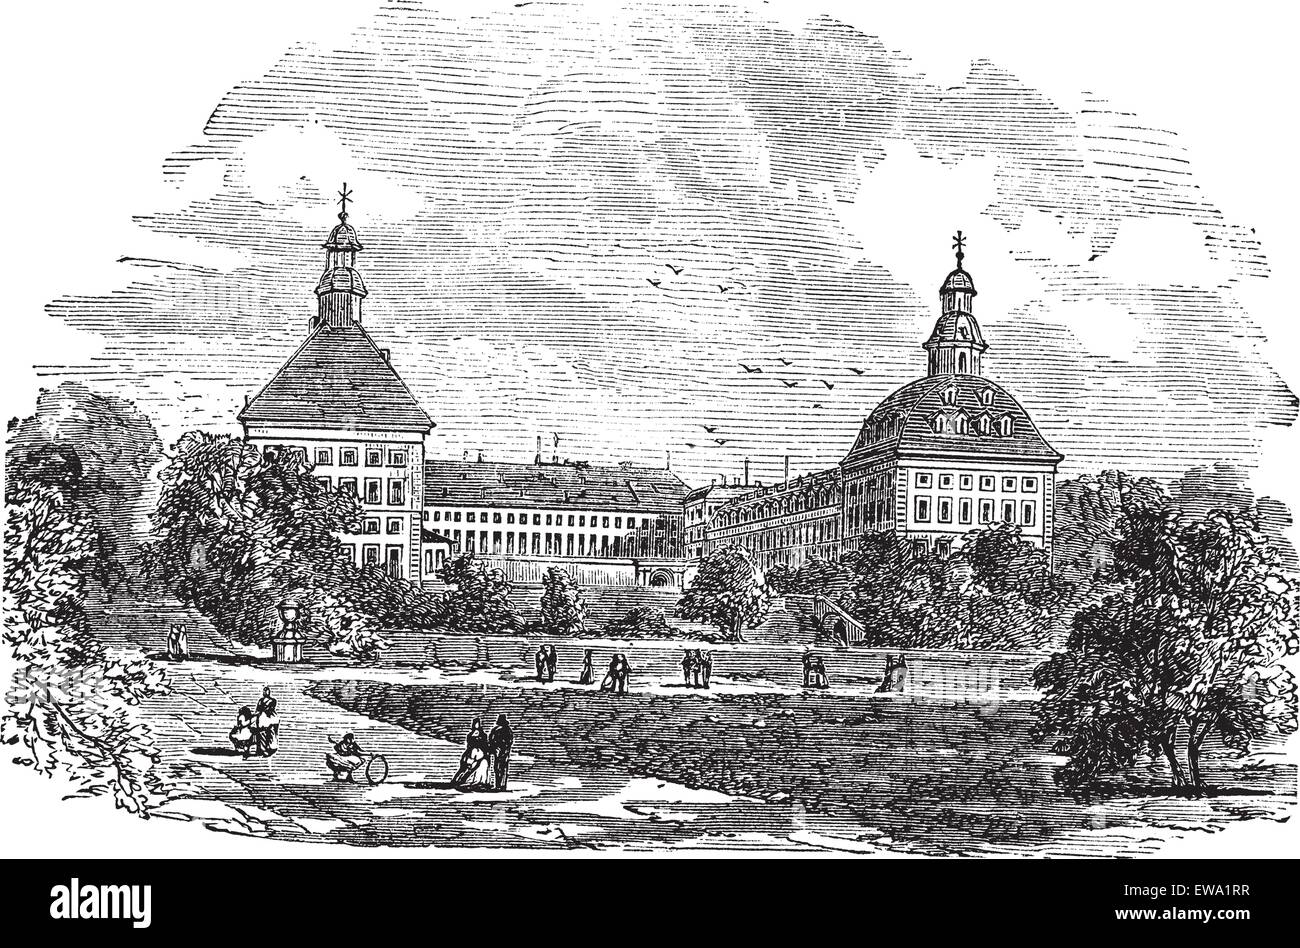 El palacio ducal o Schloss Friedenstein o castillo Friedenstein, en Gotha, Alemania, durante la década de 1890, vintage grabado. Viejo eng Ilustración del Vector